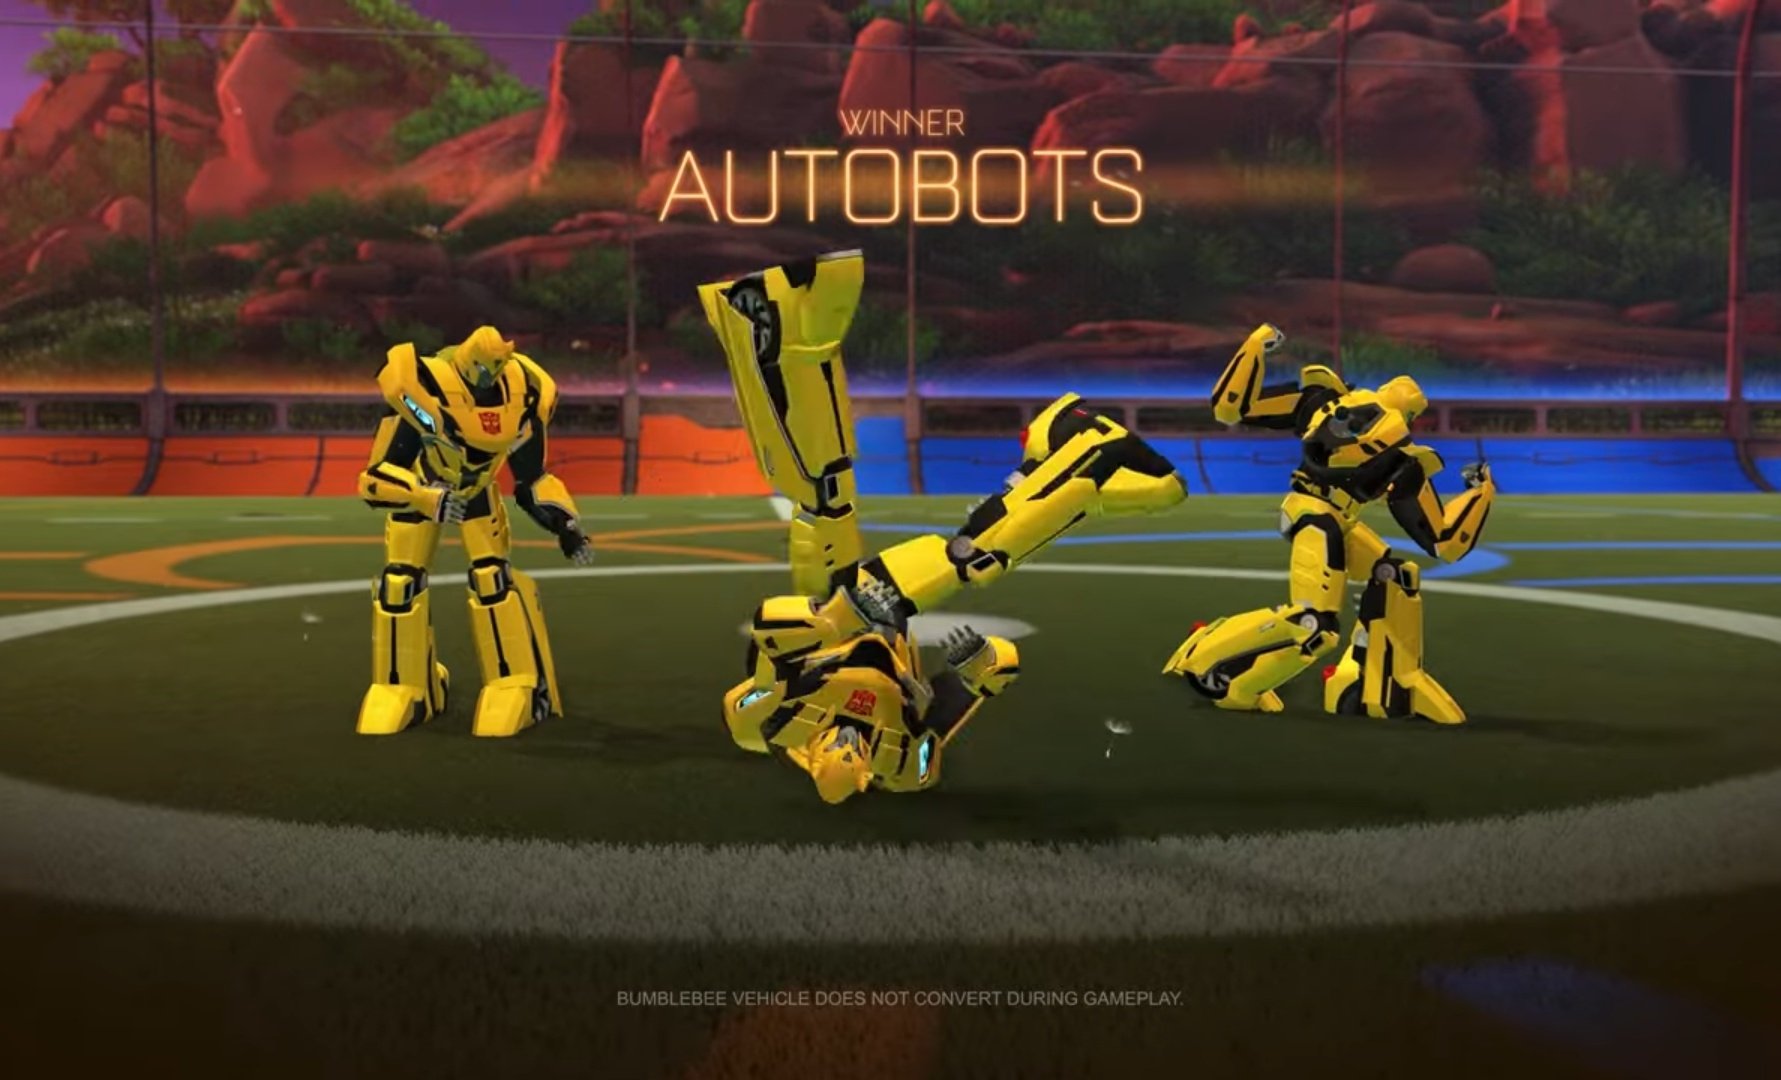 Rocket League X Transformers, la nueva colaboración de los autos futboleros. 20